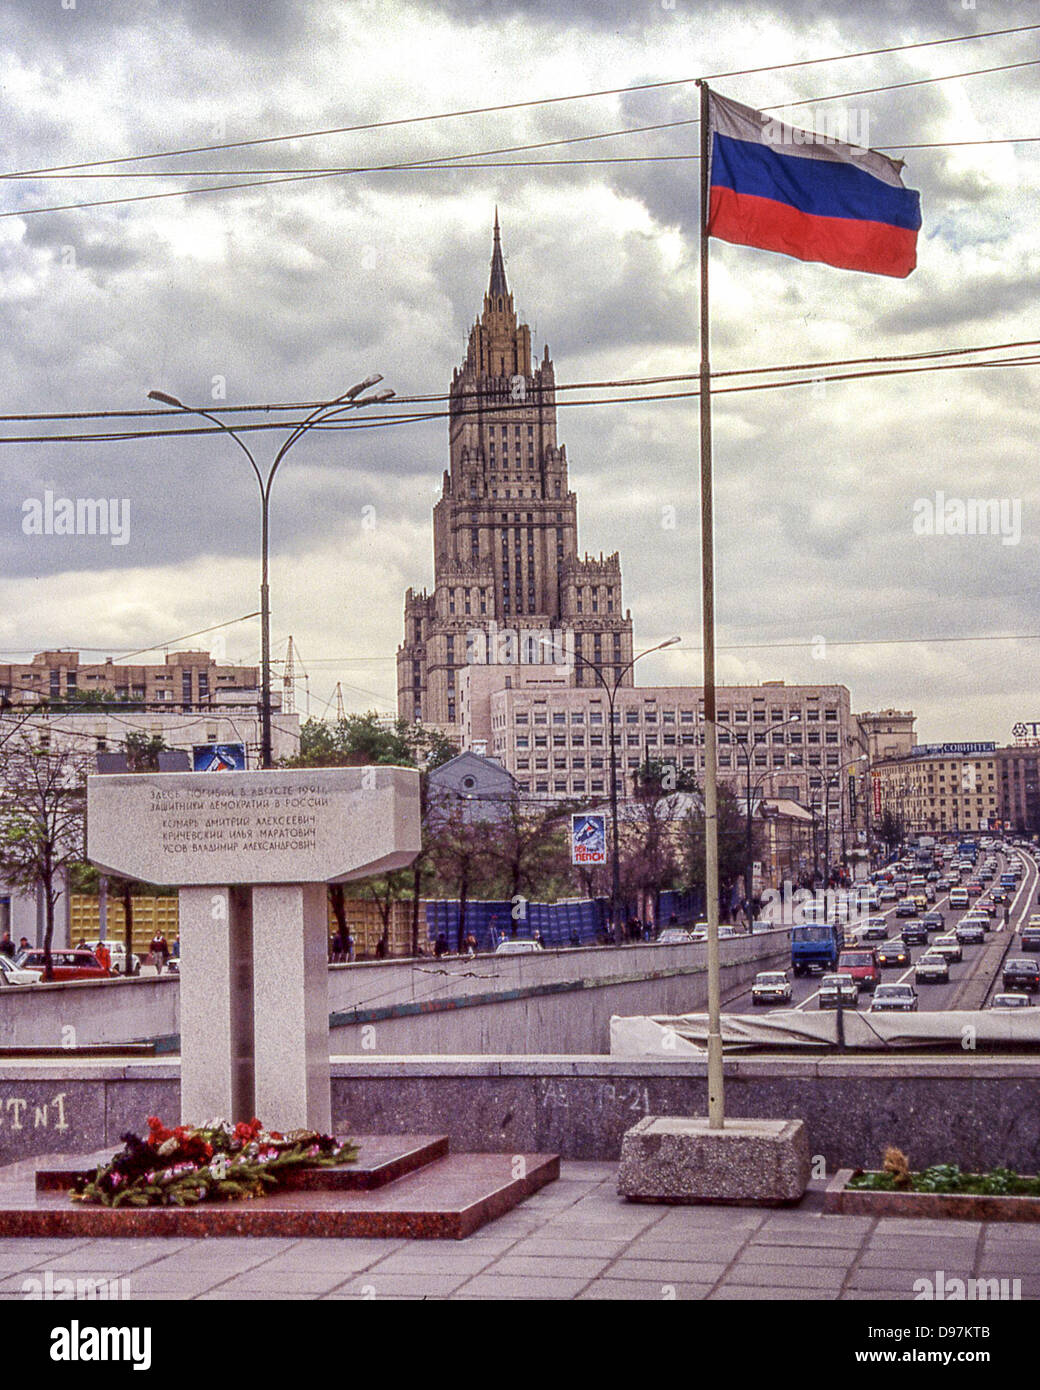 Mayo 22, 1997 - Moscú, RU - el monumento en honor a los tres hombres que fueron asesinados por debajo de este paso elevado en la lucha contra el intento de golpe de estado por parte de los comunistas de línea dura de deponer a Gorbachov en agosto de 1991, que condujeron a la disolución de la Unión Soviética en diciembre de 1991. Encima del memorial enarbola la bandera de la Federación de Rusia. El edificio en el fondo es el Ministerio de Relaciones Exteriores, una de las siete hermanas de Moscú, siete rascacielos diseñado en el estilo estalinista. (Crédito de la Imagen: © Arnold Drapkin/ZUMAPRESS.com) Foto de stock